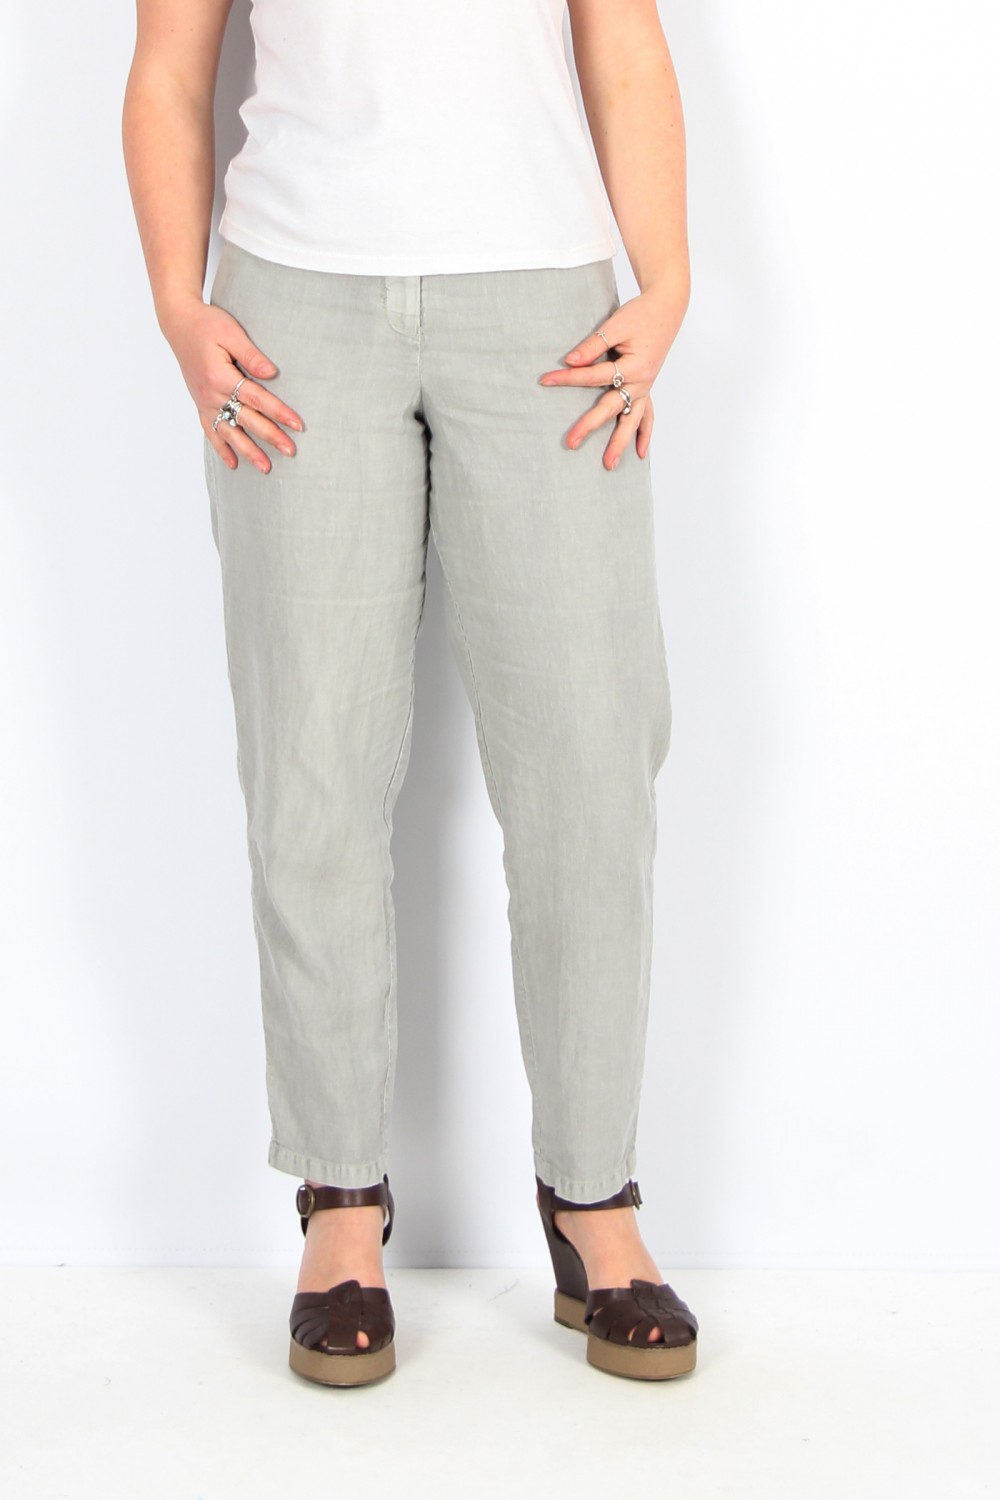 OSKA Trousers 434 Silver / Cotton-Linen Blend